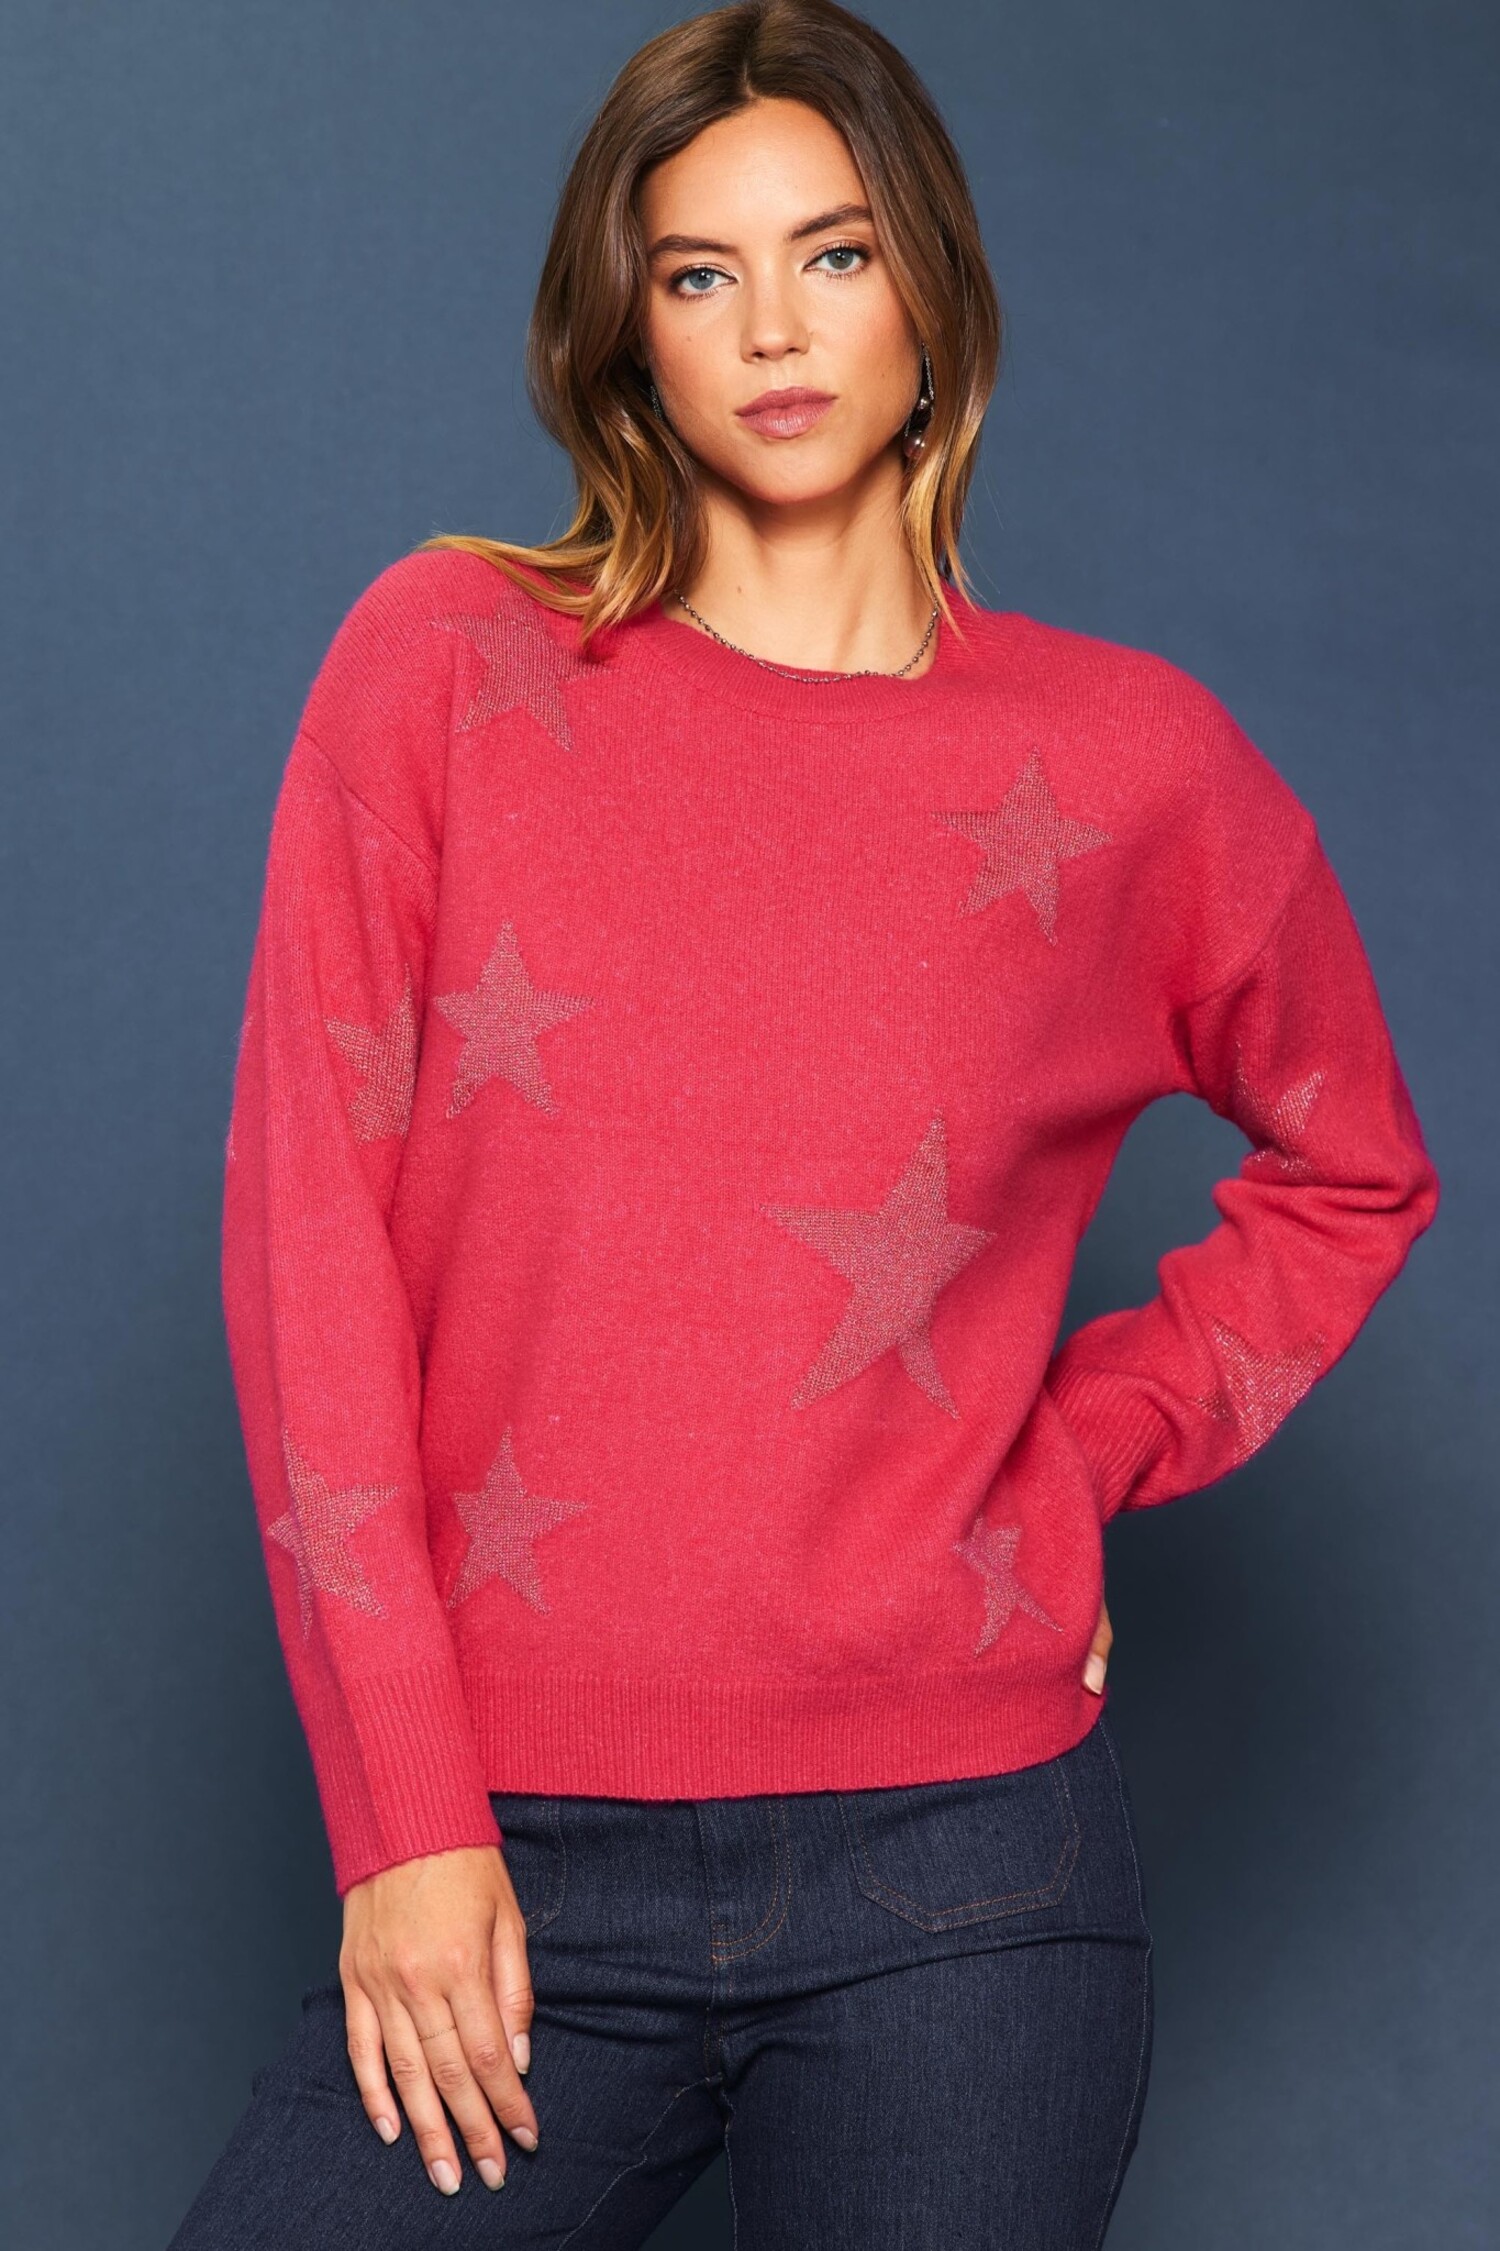 想像を超えての AMBERGLEAM Star Jacquard Sweater Mサイズ - トップス